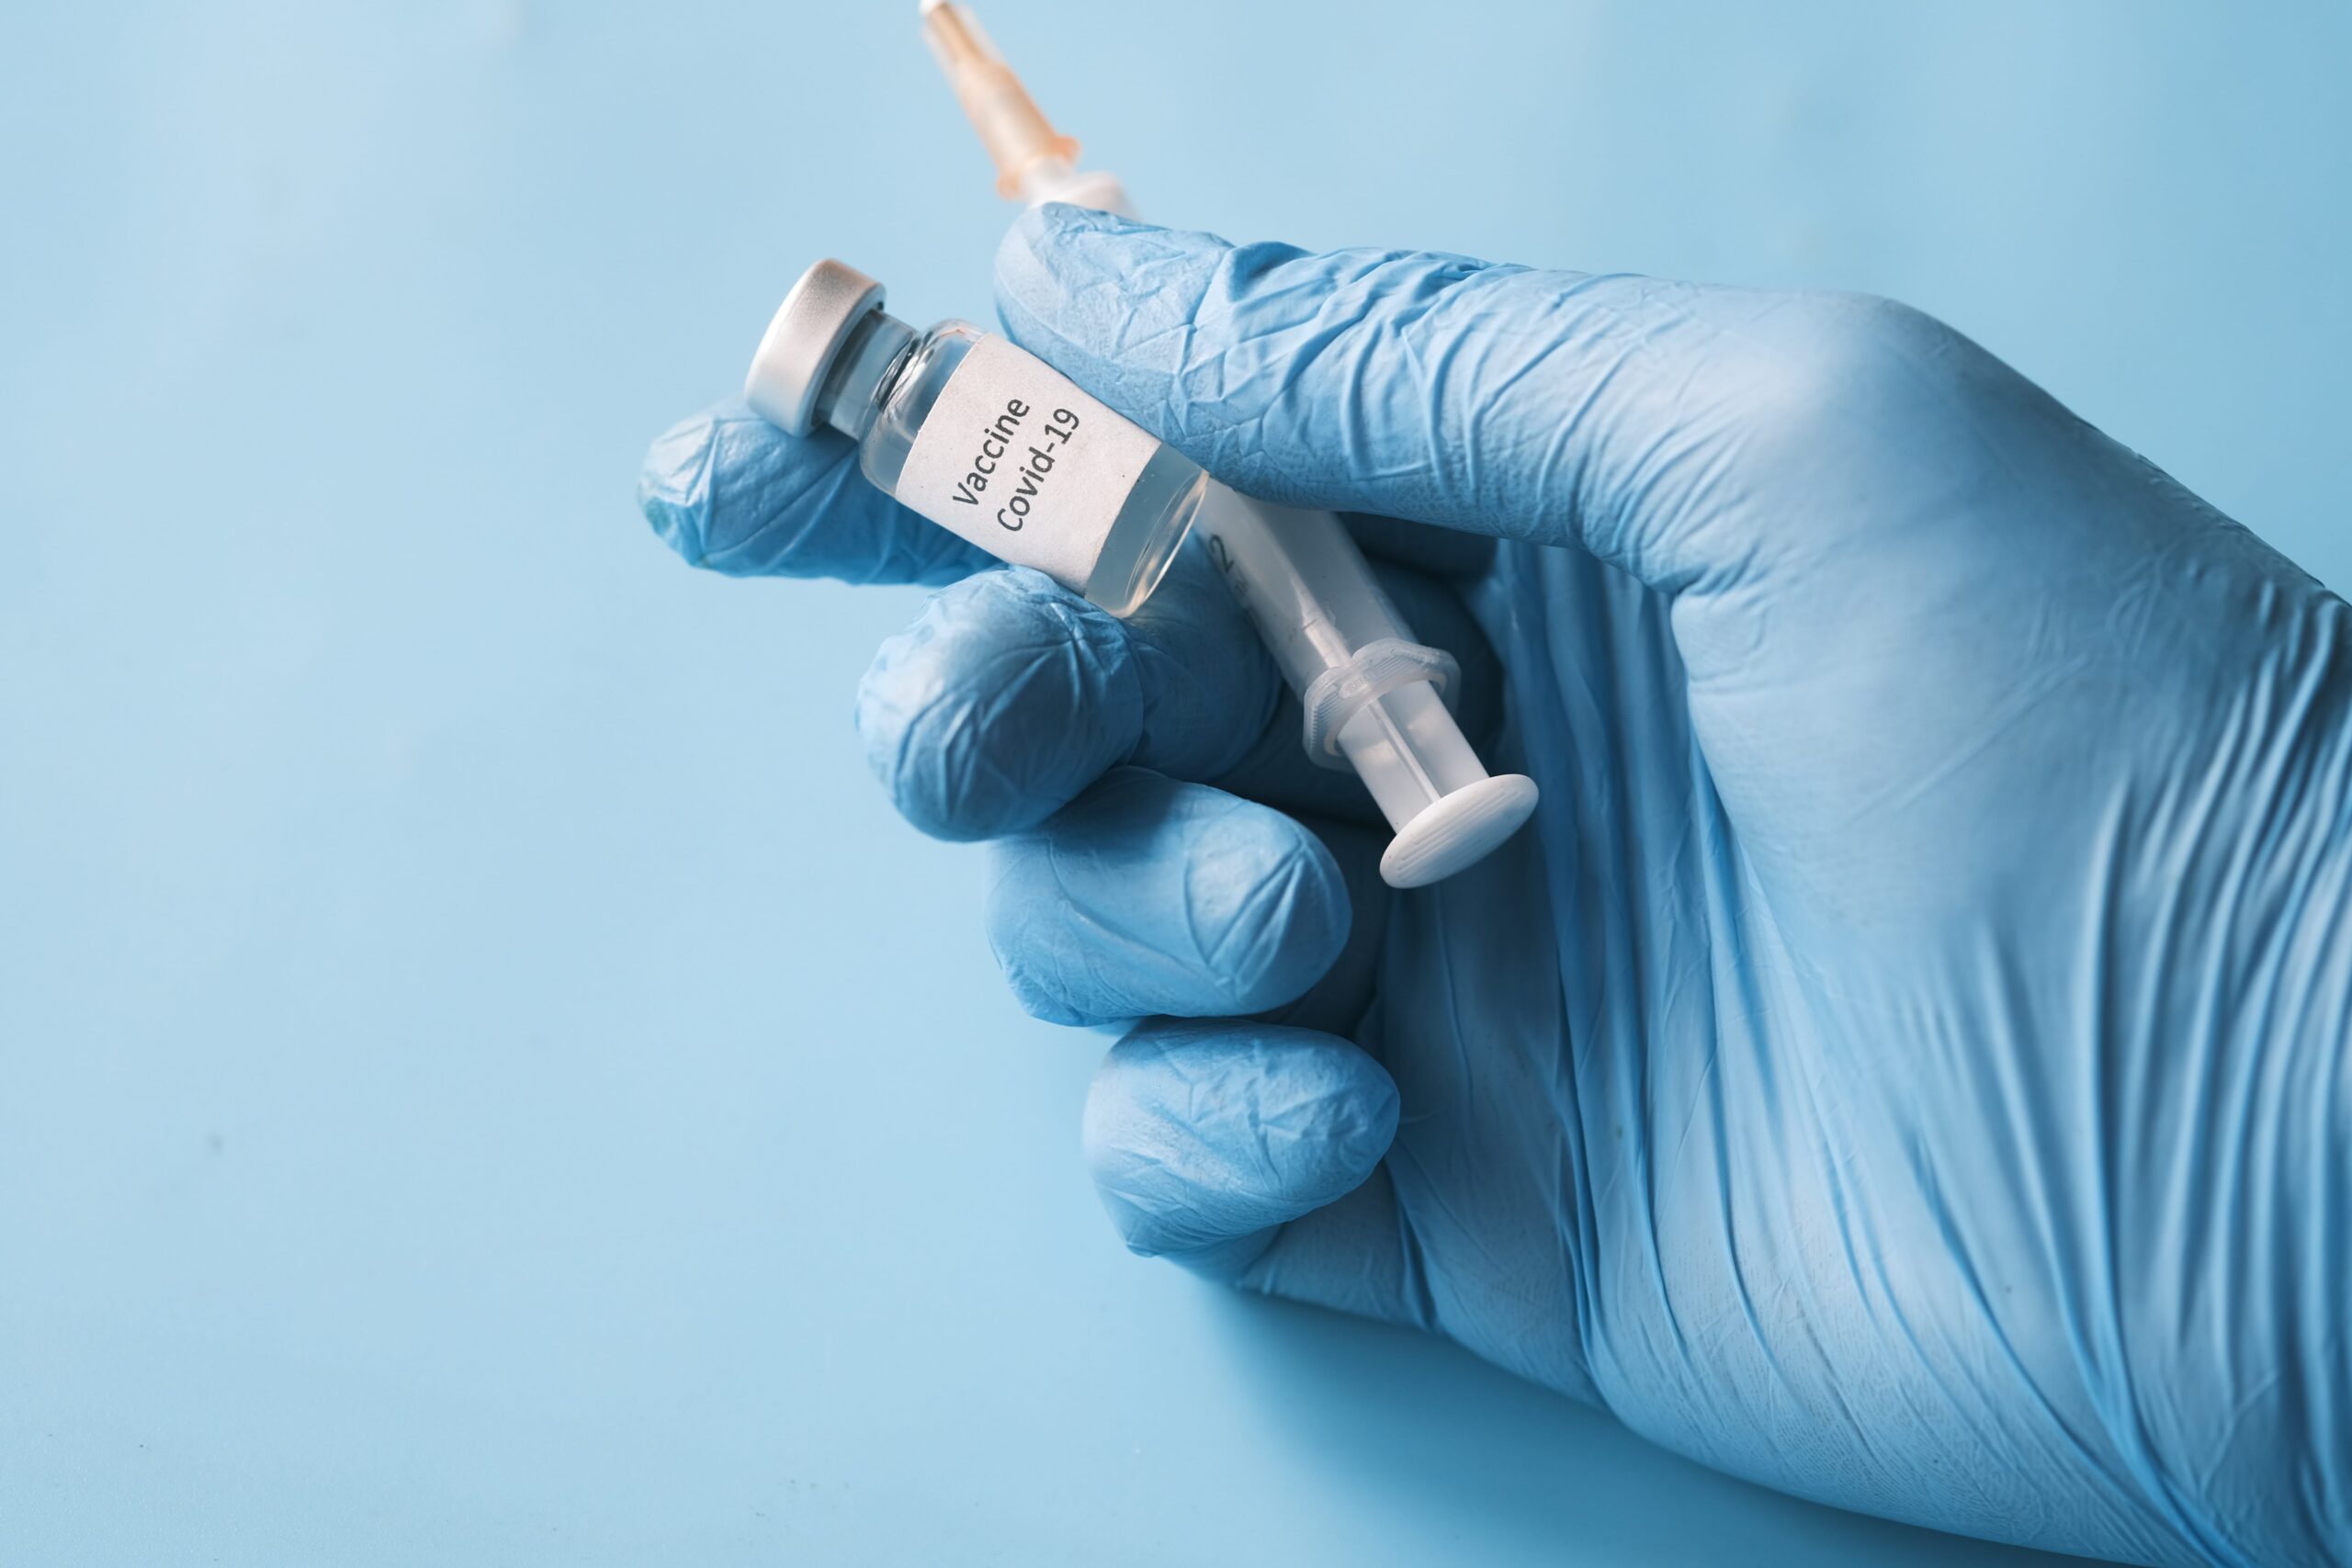 Video: Pfizer’s “Secret” Report on the Covid Vaccine.